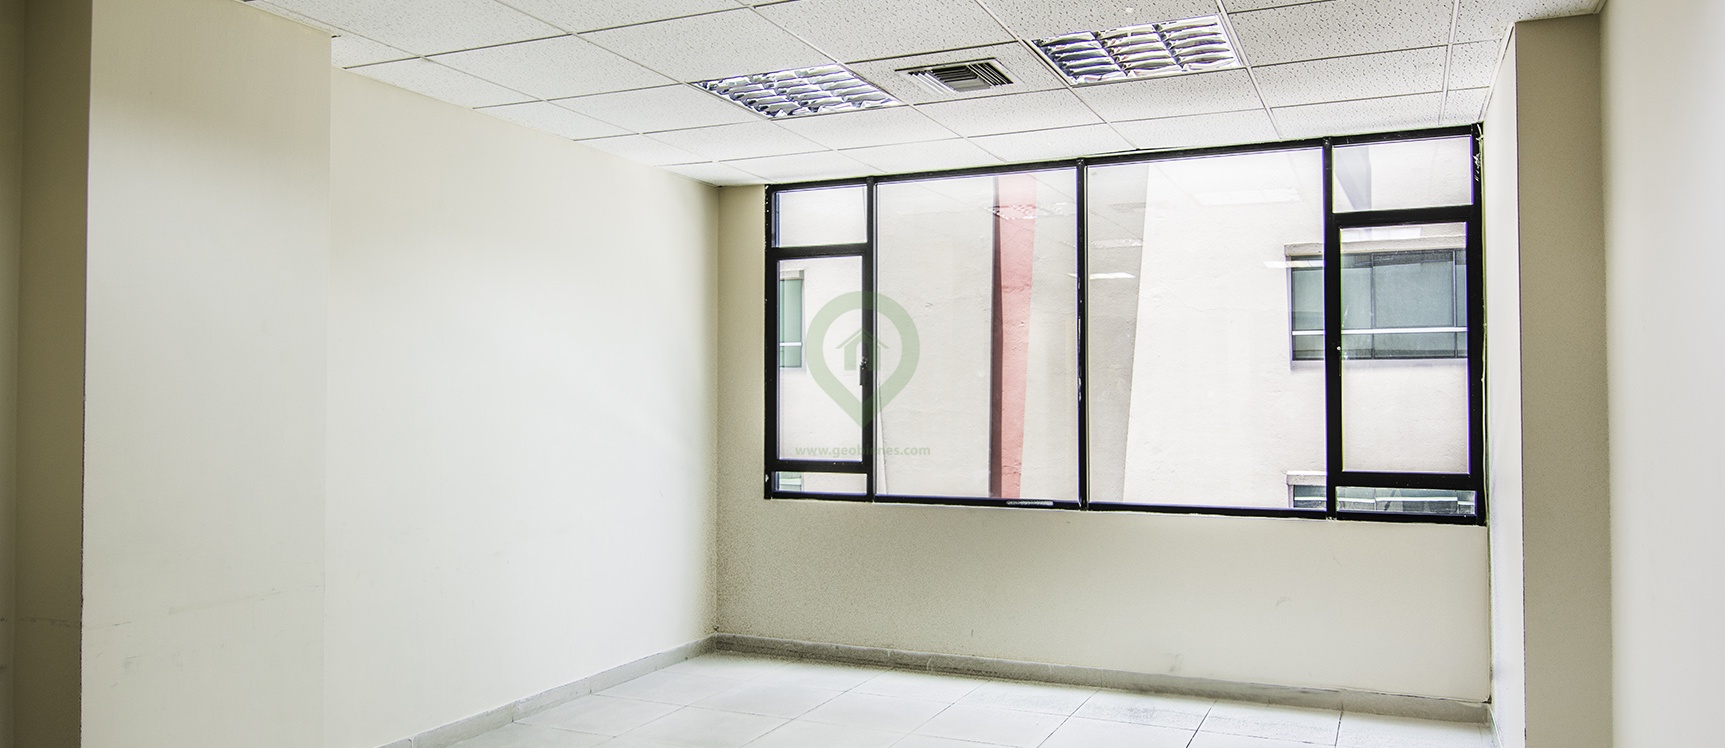 GeoBienes - Oficina en alquiler en Professional Center norte de Guayaquil - Plusvalia Guayaquil Casas de venta y alquiler Inmobiliaria Ecuador